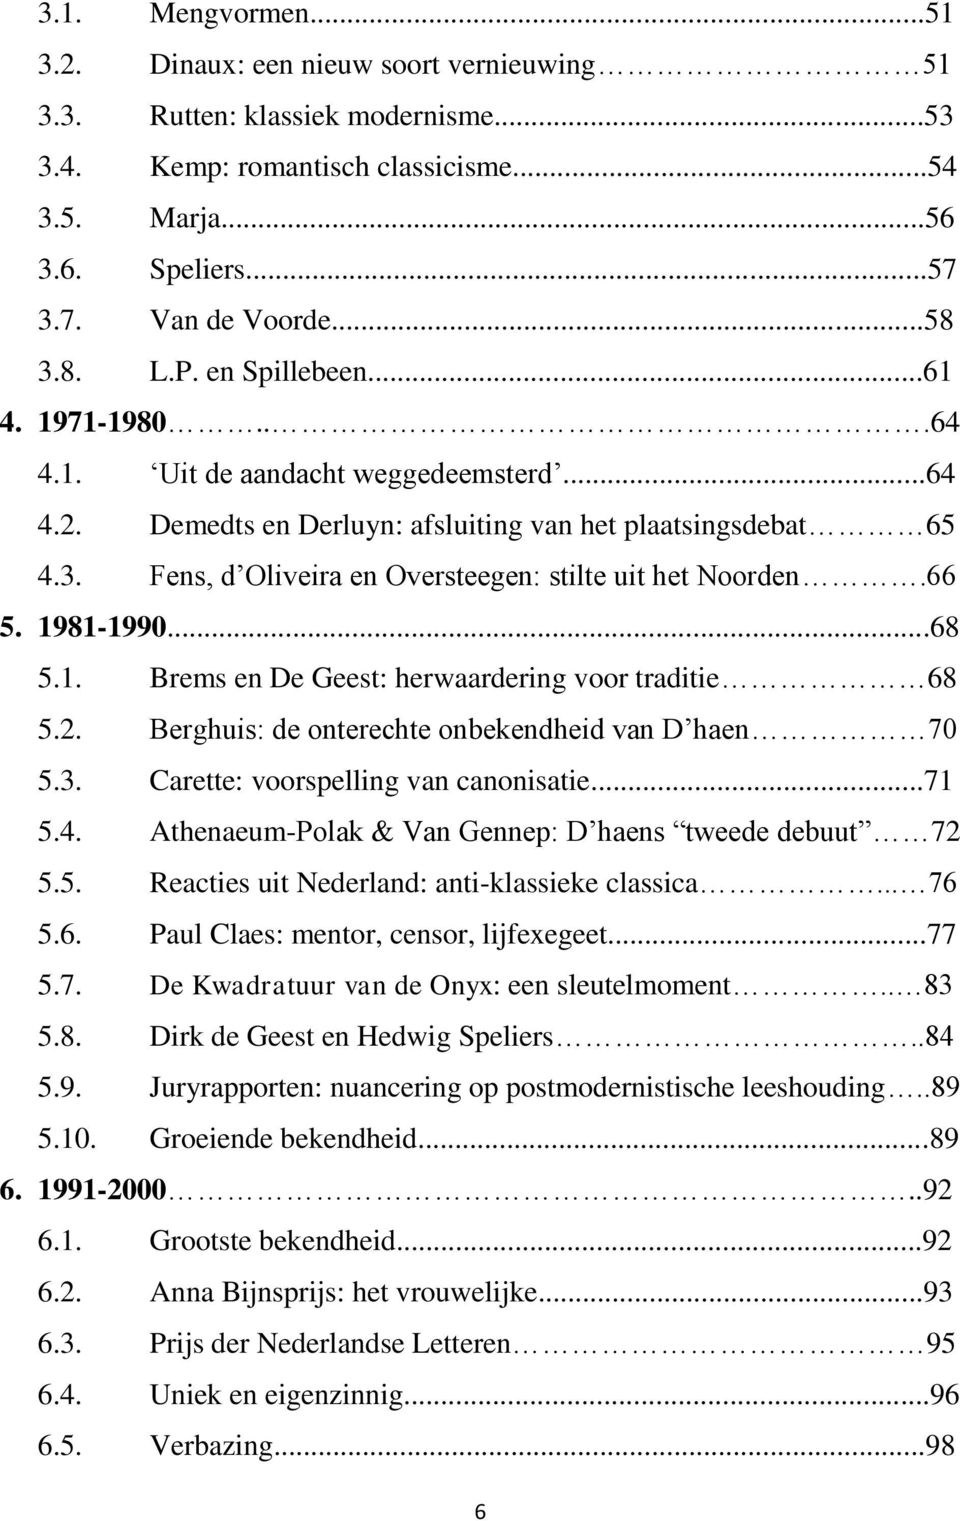 66 5. 1981-1990...68 5.1. Brems en De Geest: herwaardering voor traditie 68 5.2. Berghuis: de onterechte onbekendheid van D haen 70 5.3. Carette: voorspelling van canonisatie...71 5.4.